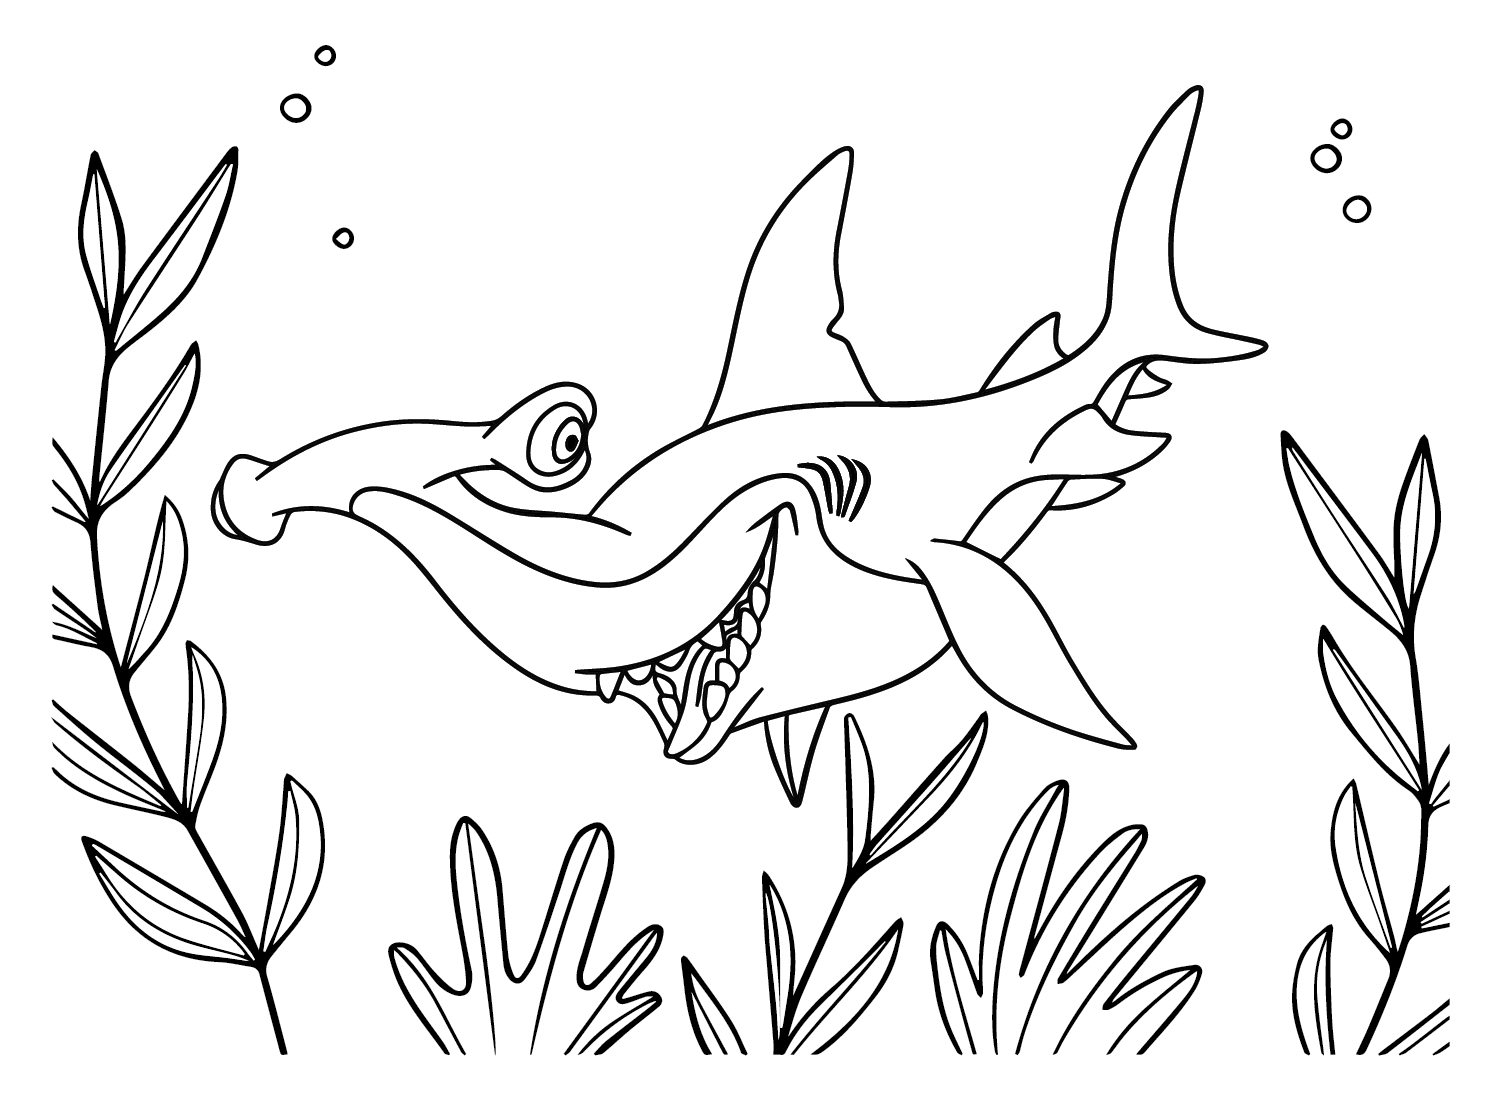 Tiburón martillo de La familia de los peces de Tiburón martillo